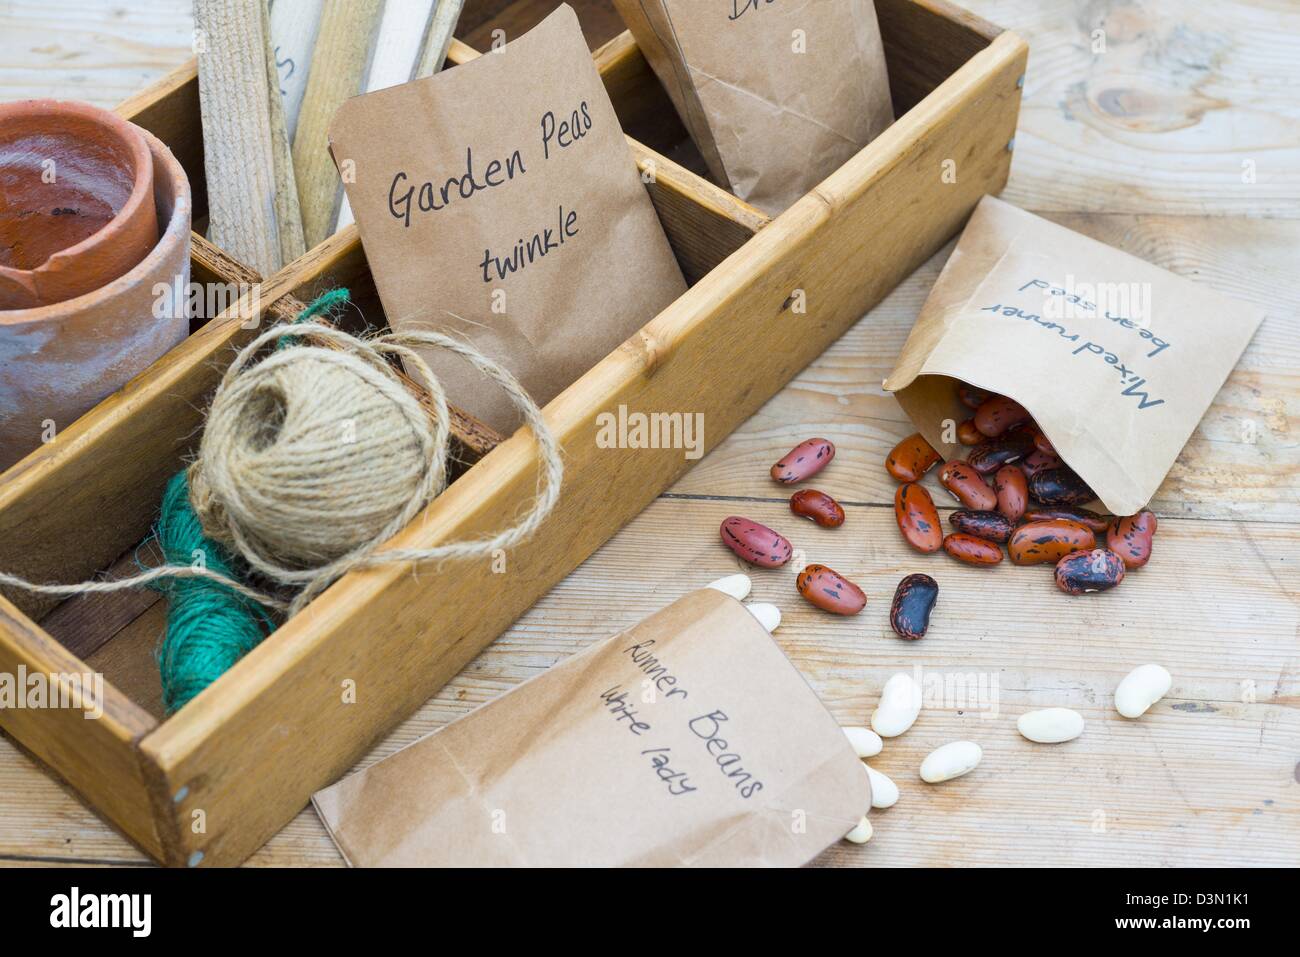 Banqueta aislante primavera bodegón con semillas guardadas en paquetes caseros y productos de jardinería Foto de stock